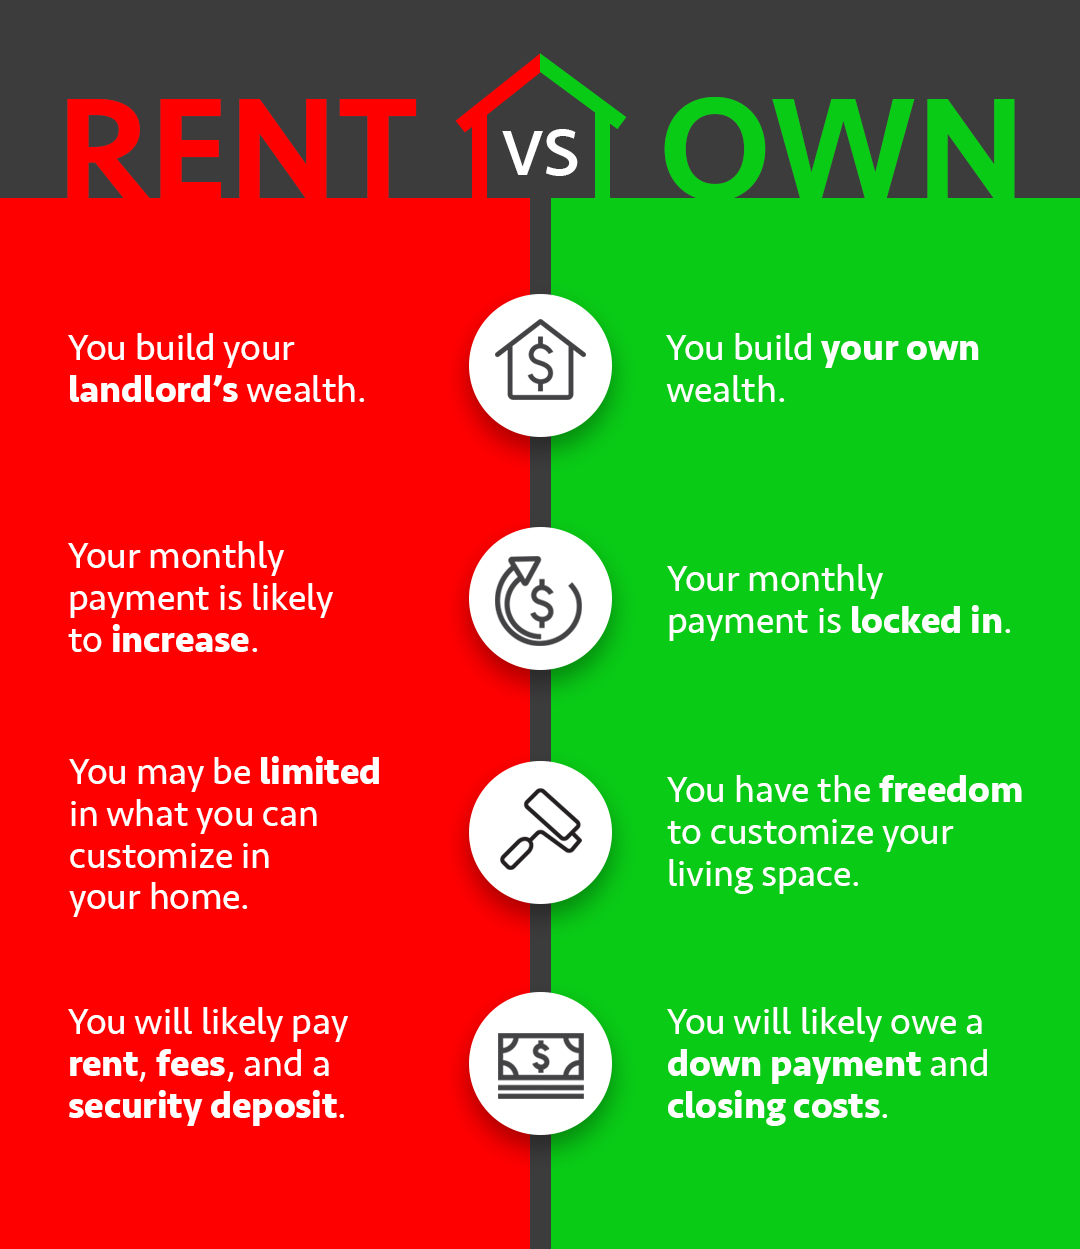 rent vs own.jpg